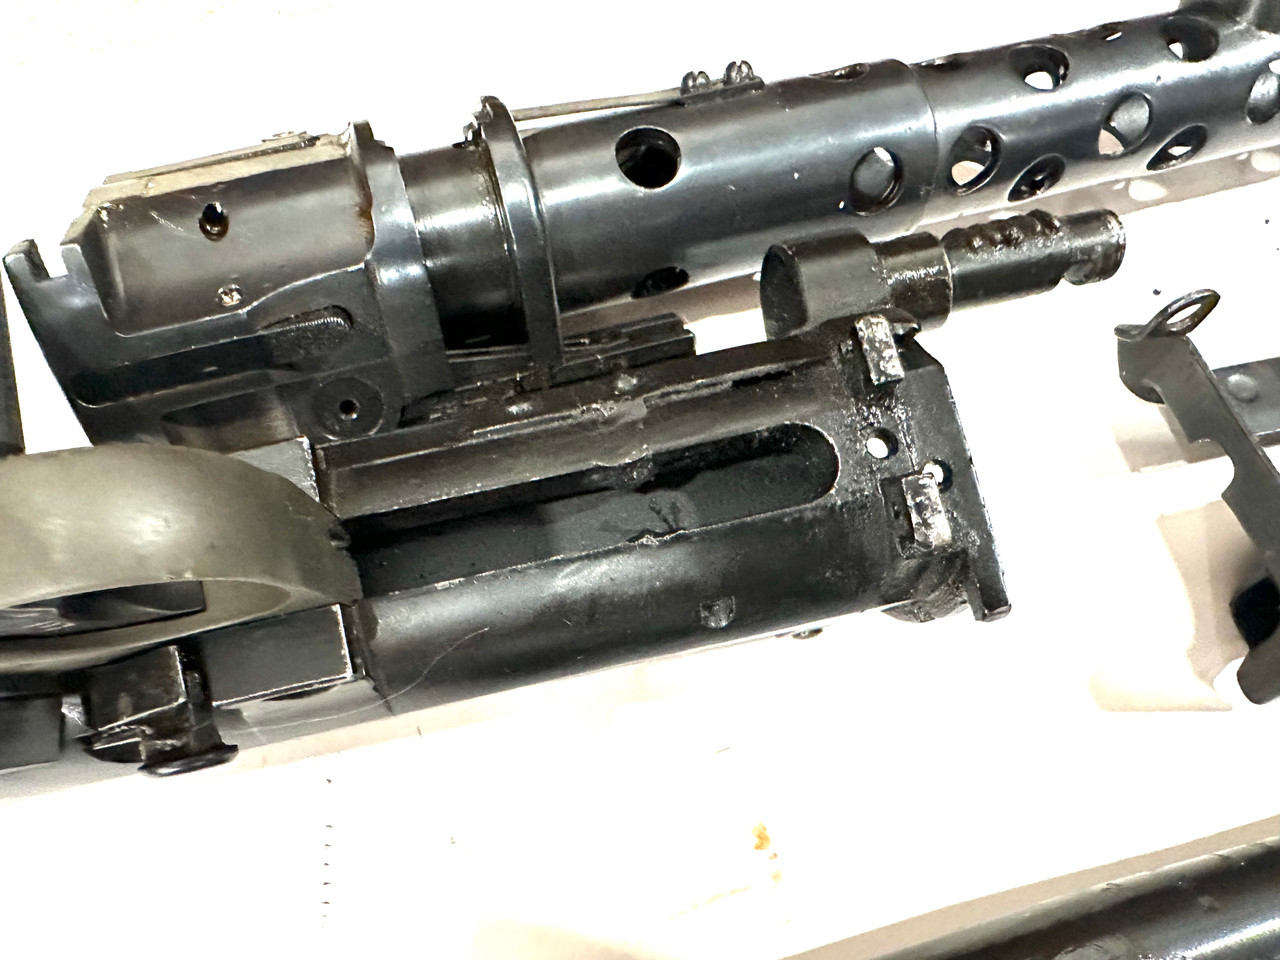 Lot: MG34 Display Gun with Parts